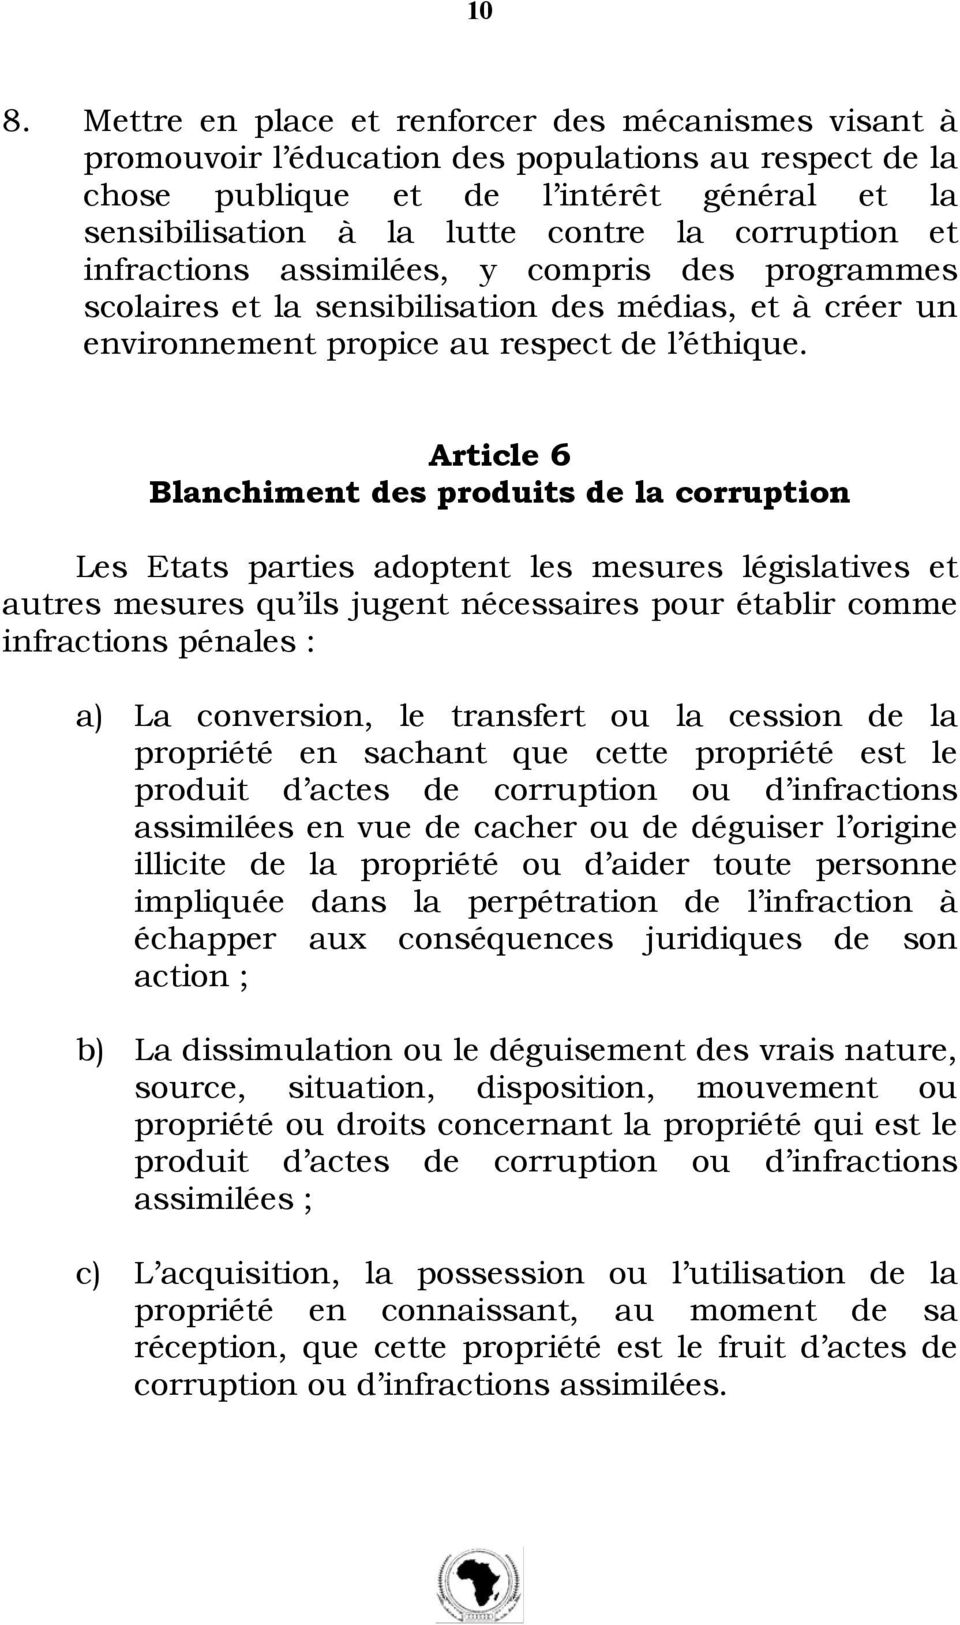 Article 6 Blanchiment des produits de la corruption Les Etats parties adoptent les mesures législatives et autres mesures qu ils jugent nécessaires pour établir comme infractions pénales : a) La